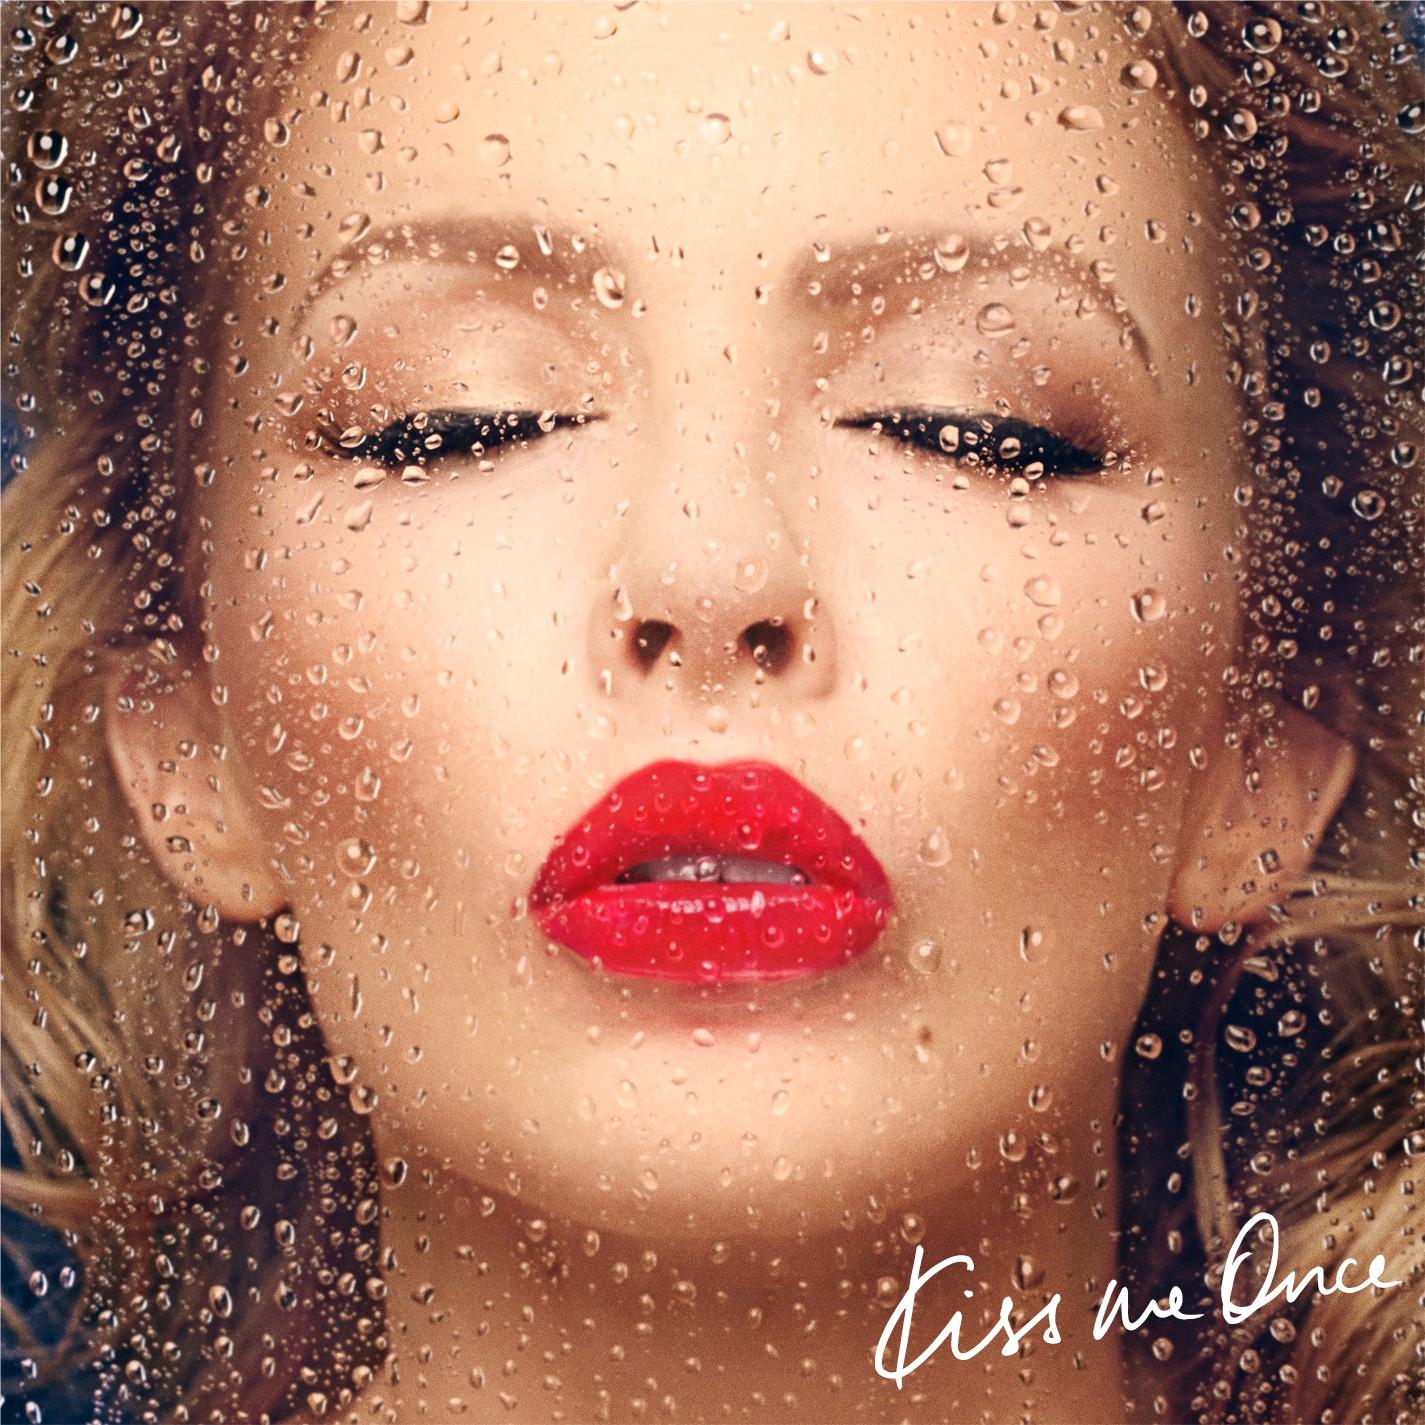 Omslaget till Kylies nya skiva ”Kiss me once”. De röda läpparna pryds med KMO.